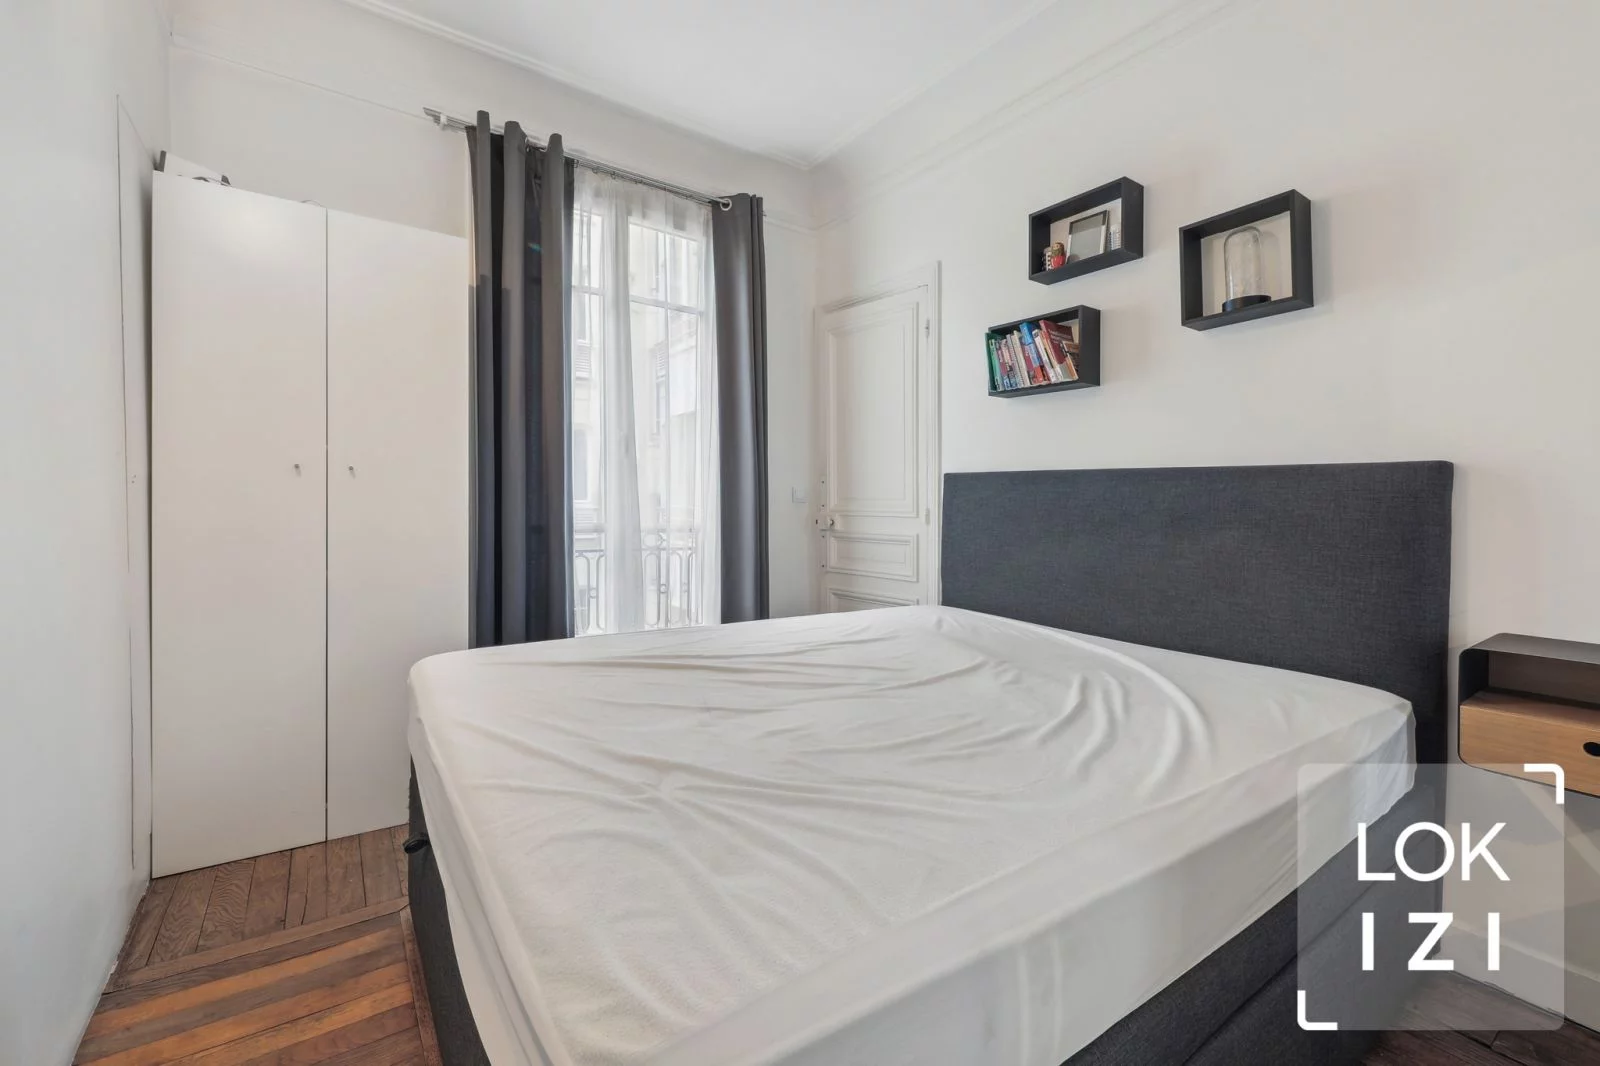 Location appartement meublé 2 pièces 48m² (Paris 16)